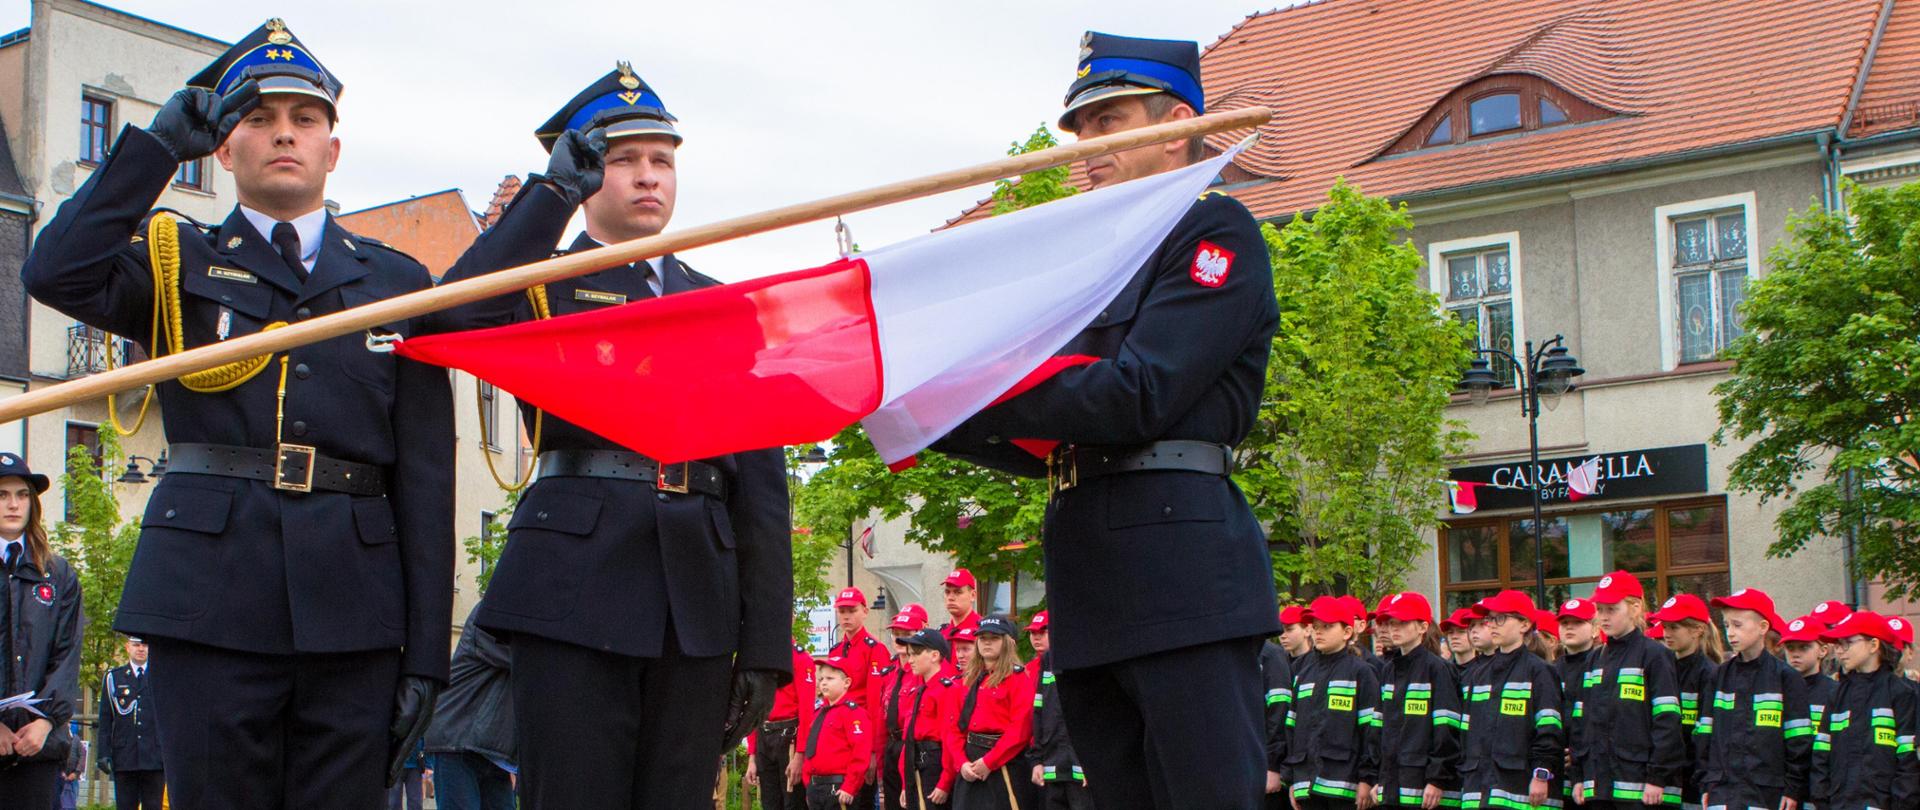 Strażacki poczet flagowy w czasie uroczystego wieszania flagi na drabinie strażackiej